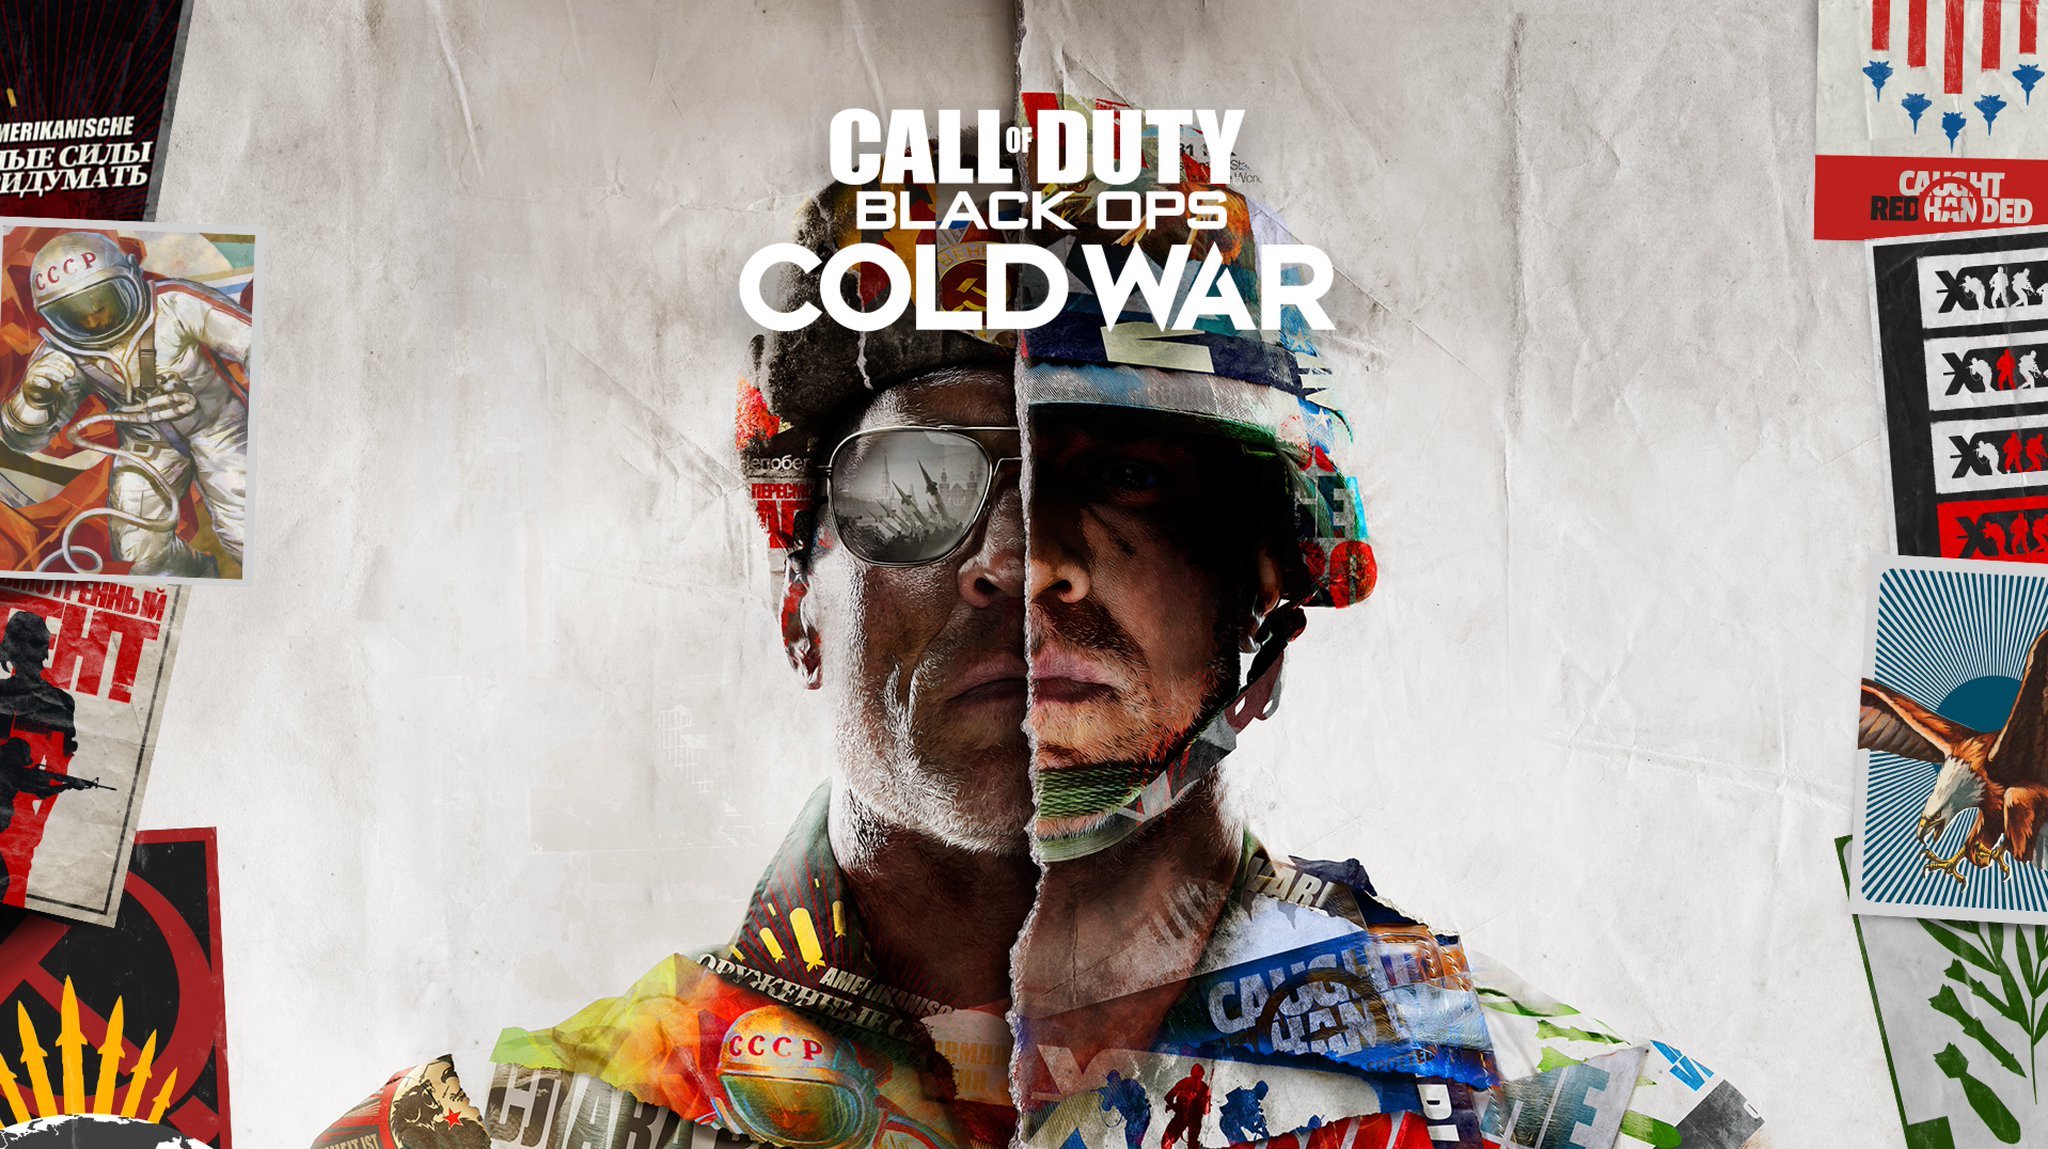 Nos adentramos a la Guerra Fría entre balazos y camaradas sovietivos con el nuevo Call of Duty: Black Ops Cold War